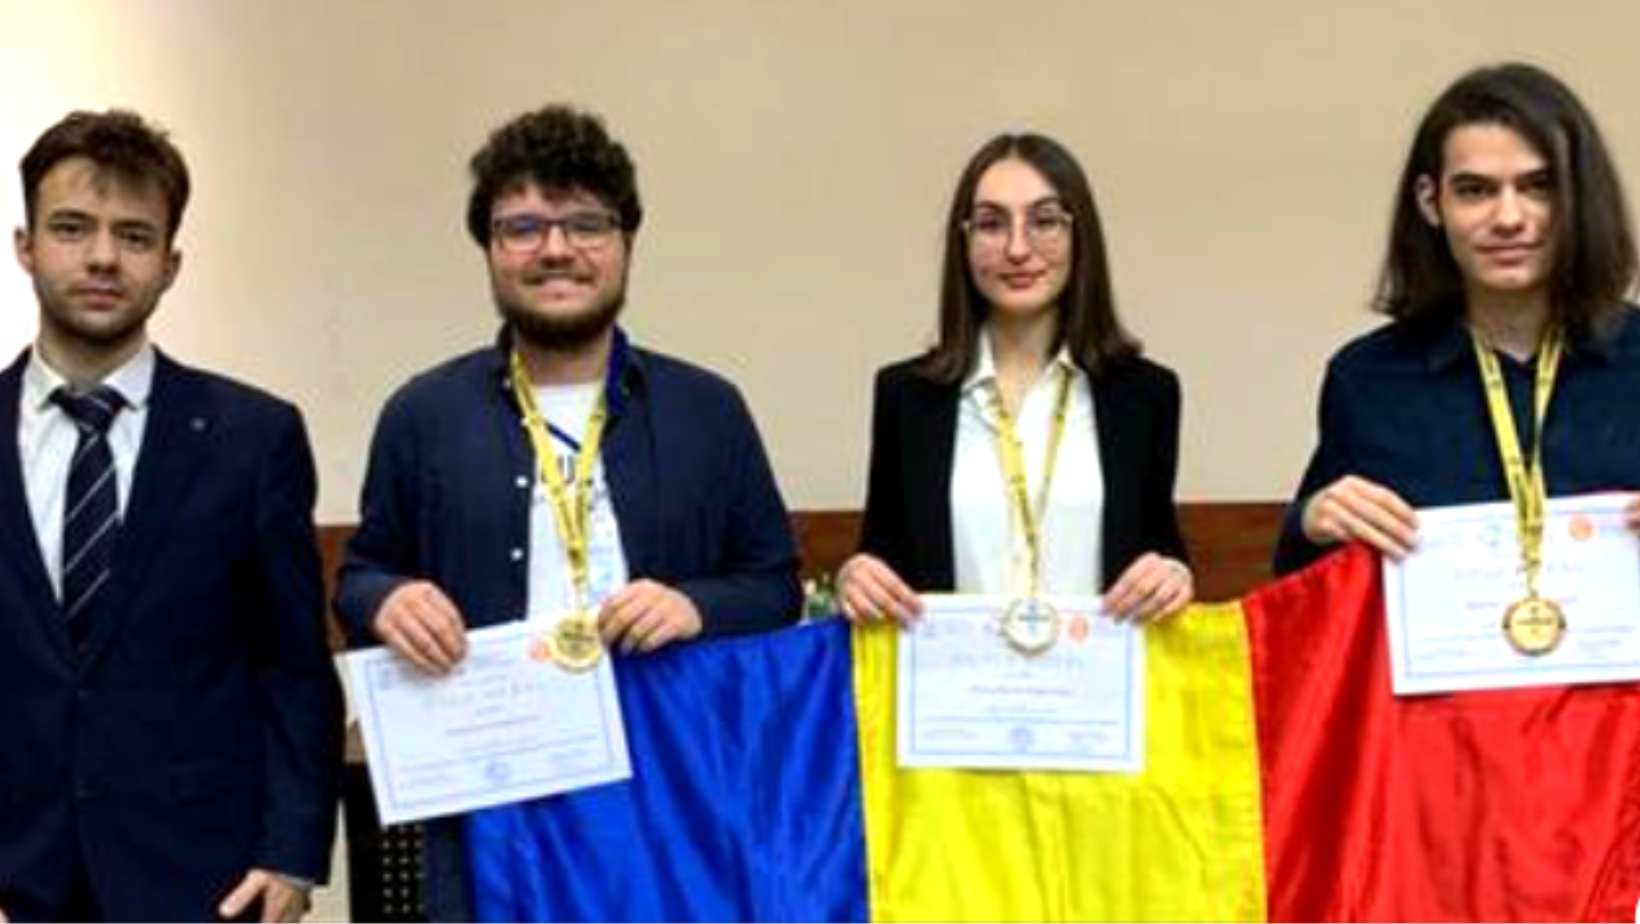 Studenții UB au câștigat aurul la Concursul Internațional de Matematică, pentru al cincilea an consecutiv